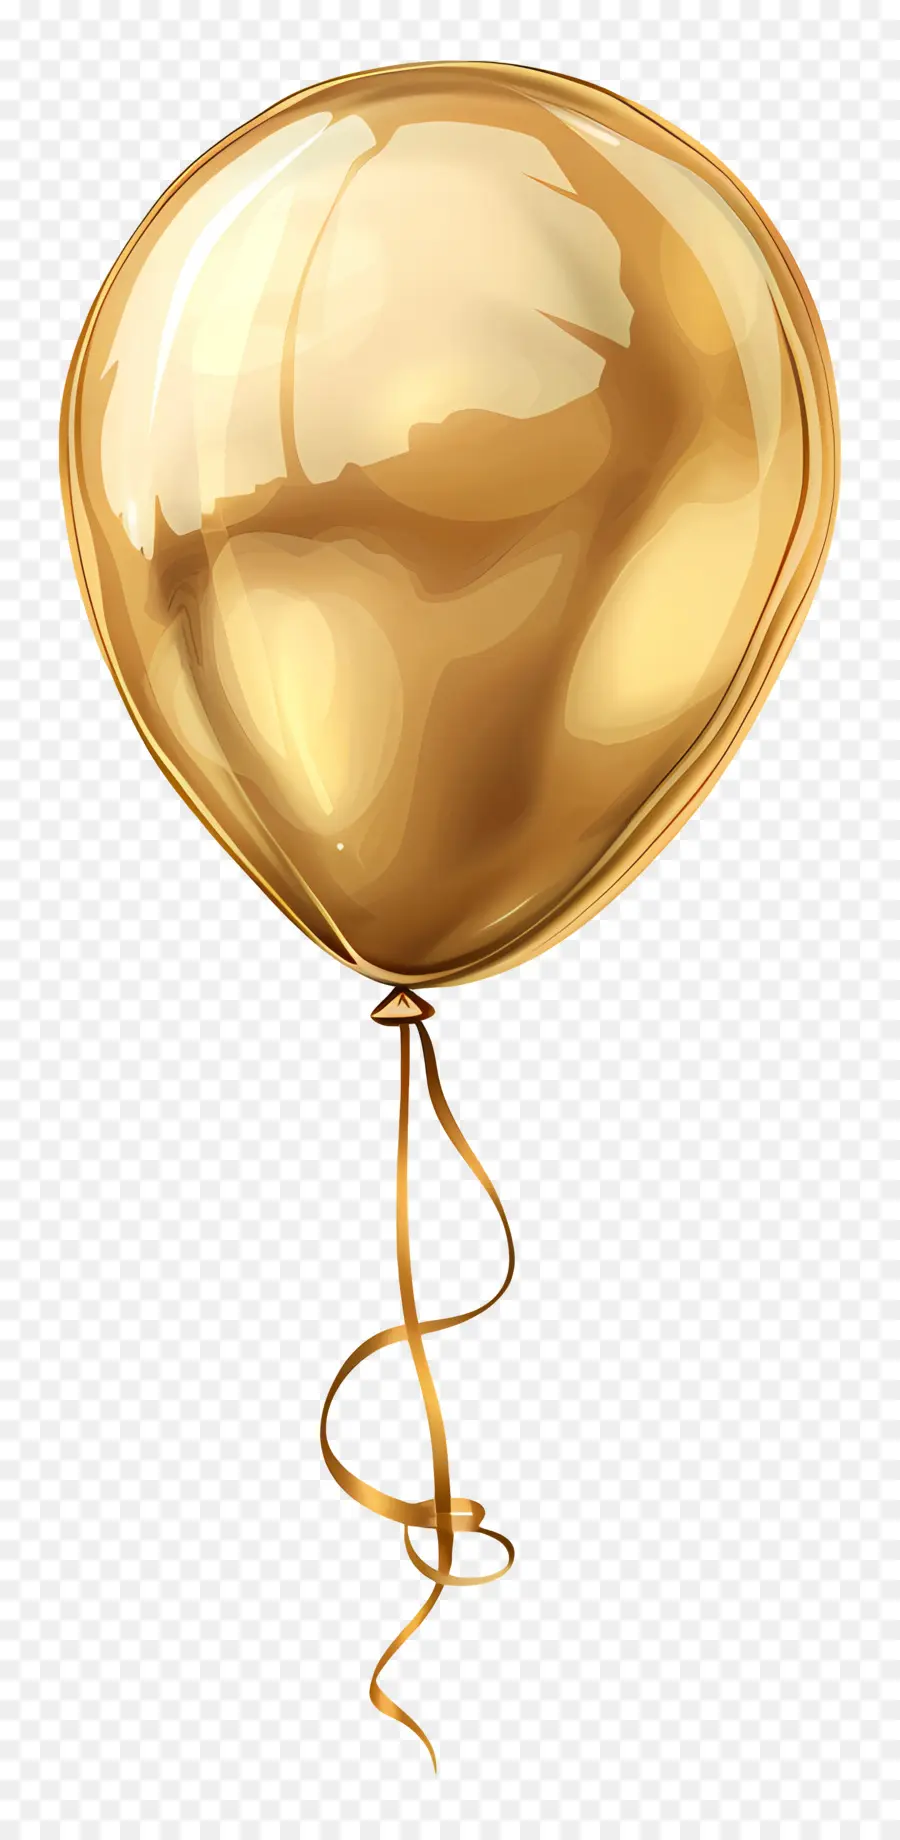 pallone d'oro - Palloncino dorato che galleggia con lo spago in aria